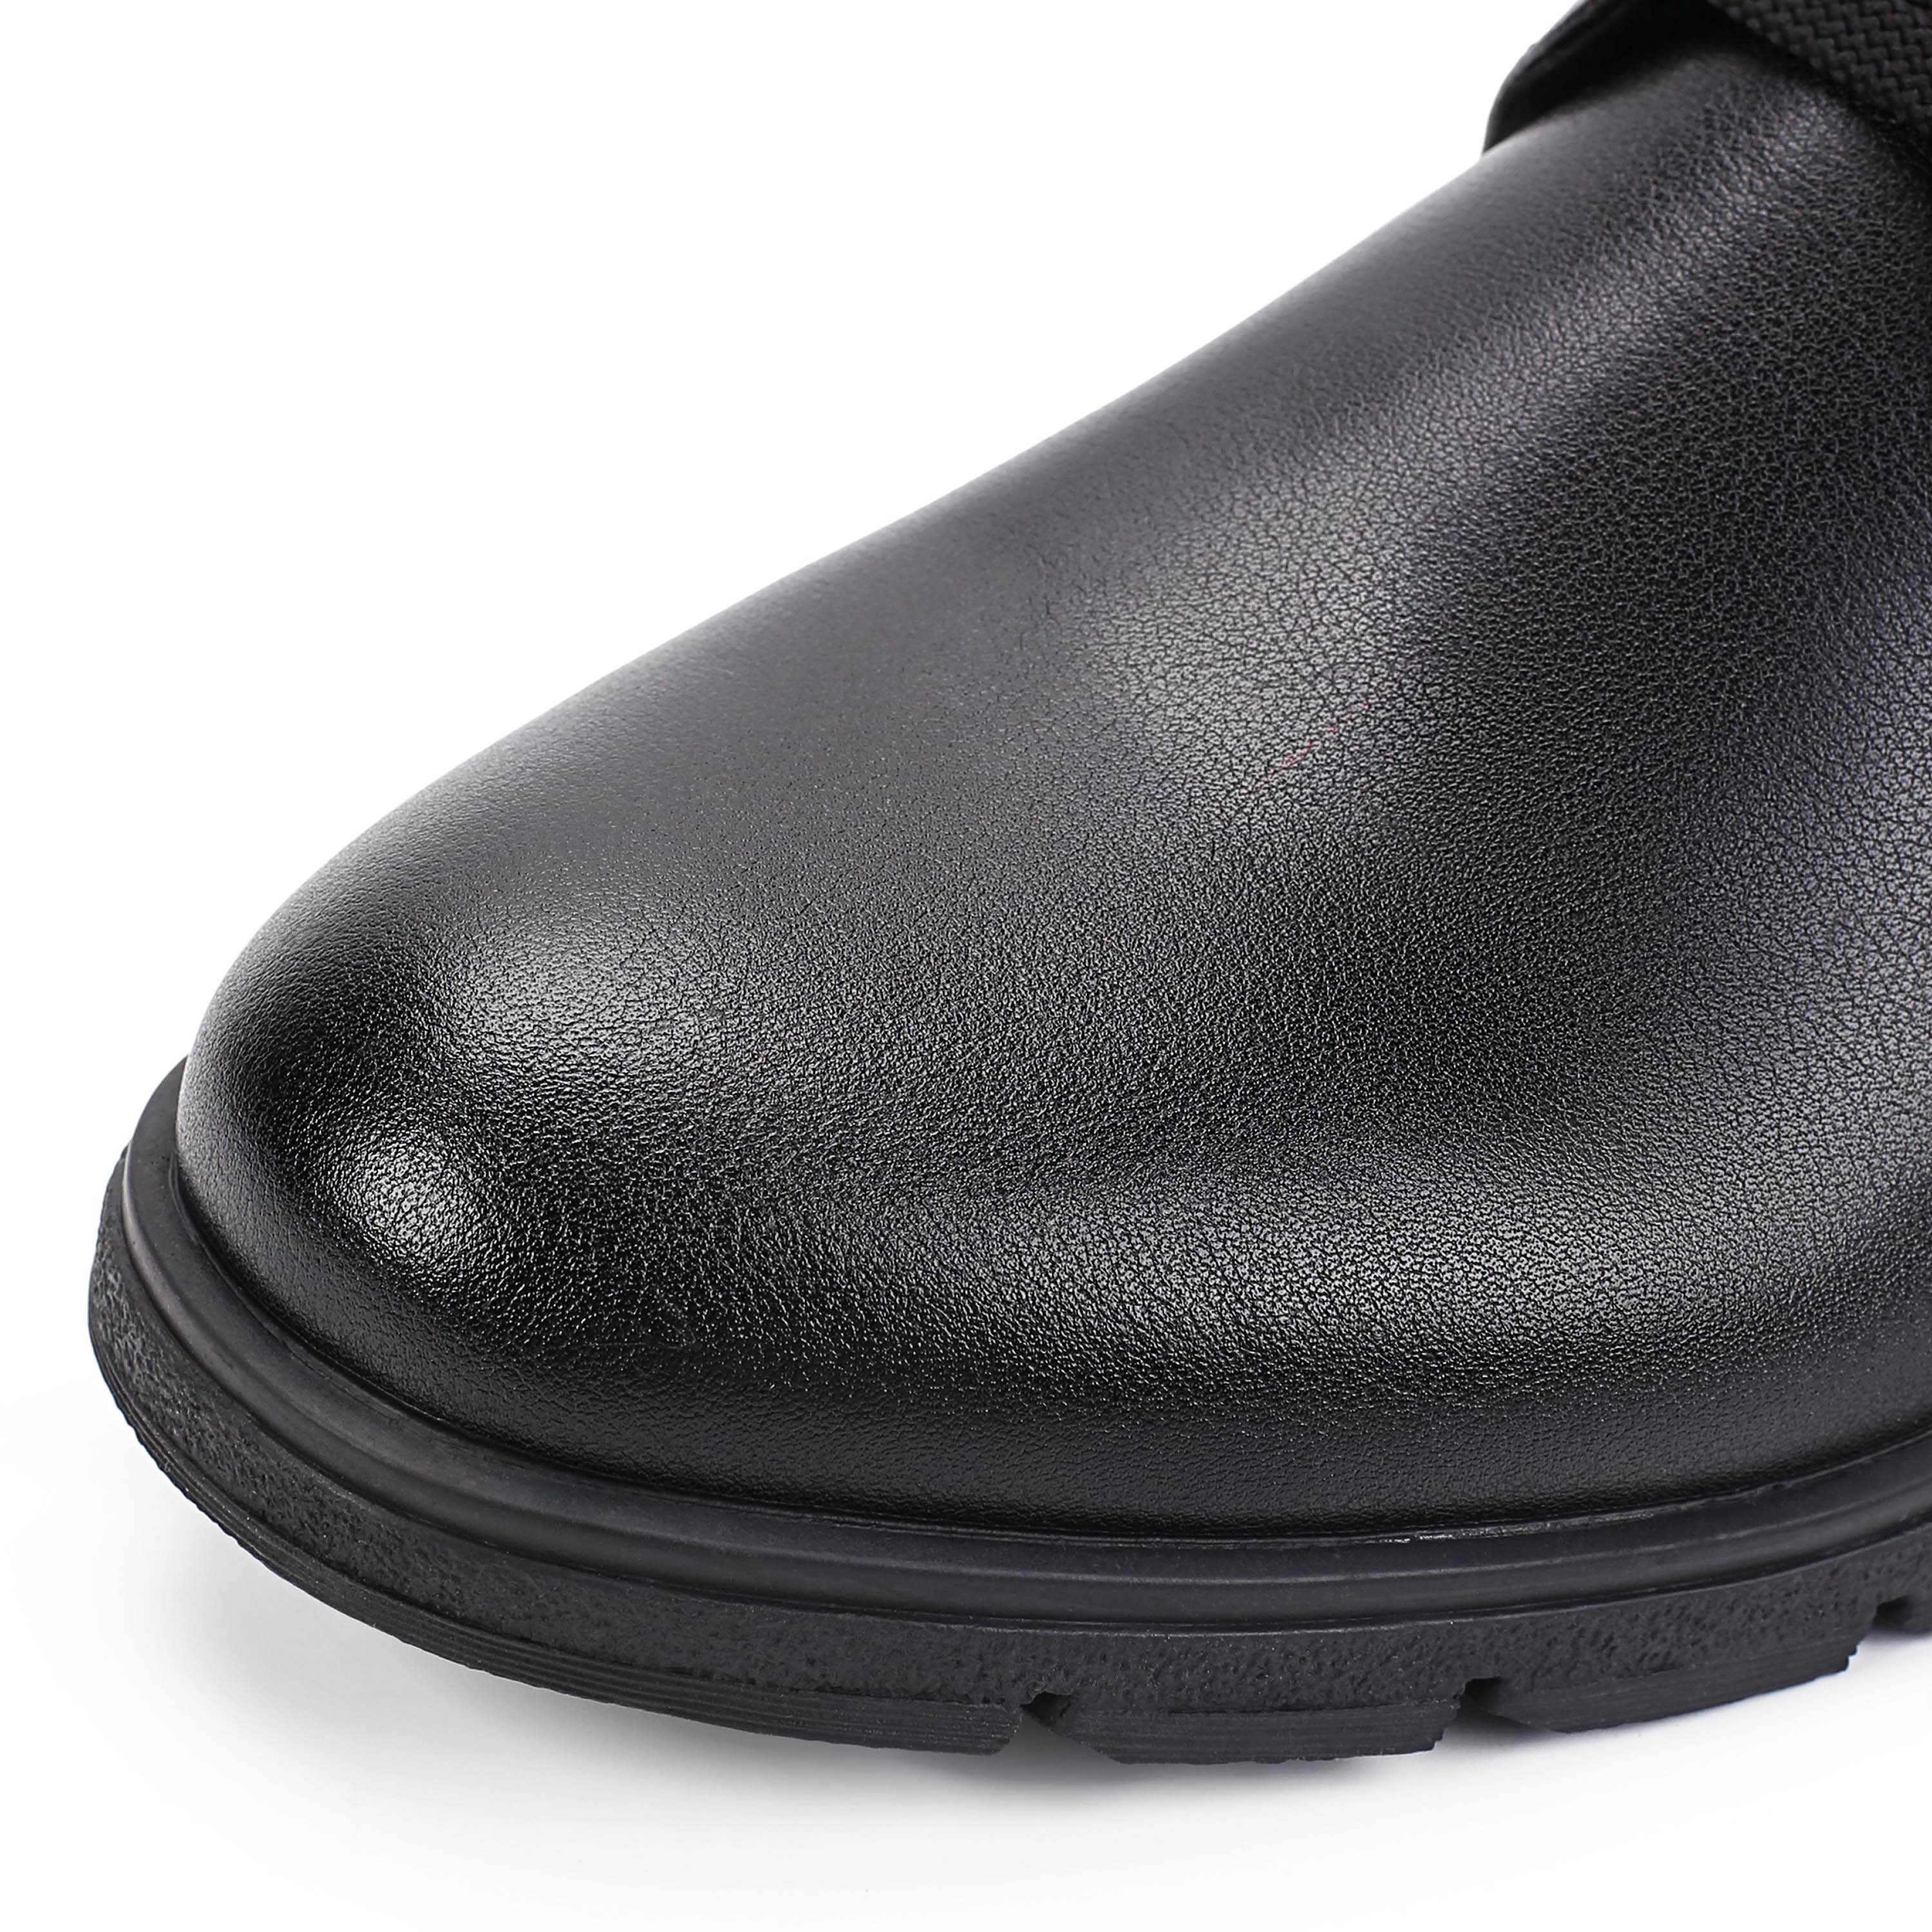 Ботинки MUNZ Shoes 098-126A-2602 098-126A-2602, цвет черный, размер 42 дерби - фото 6